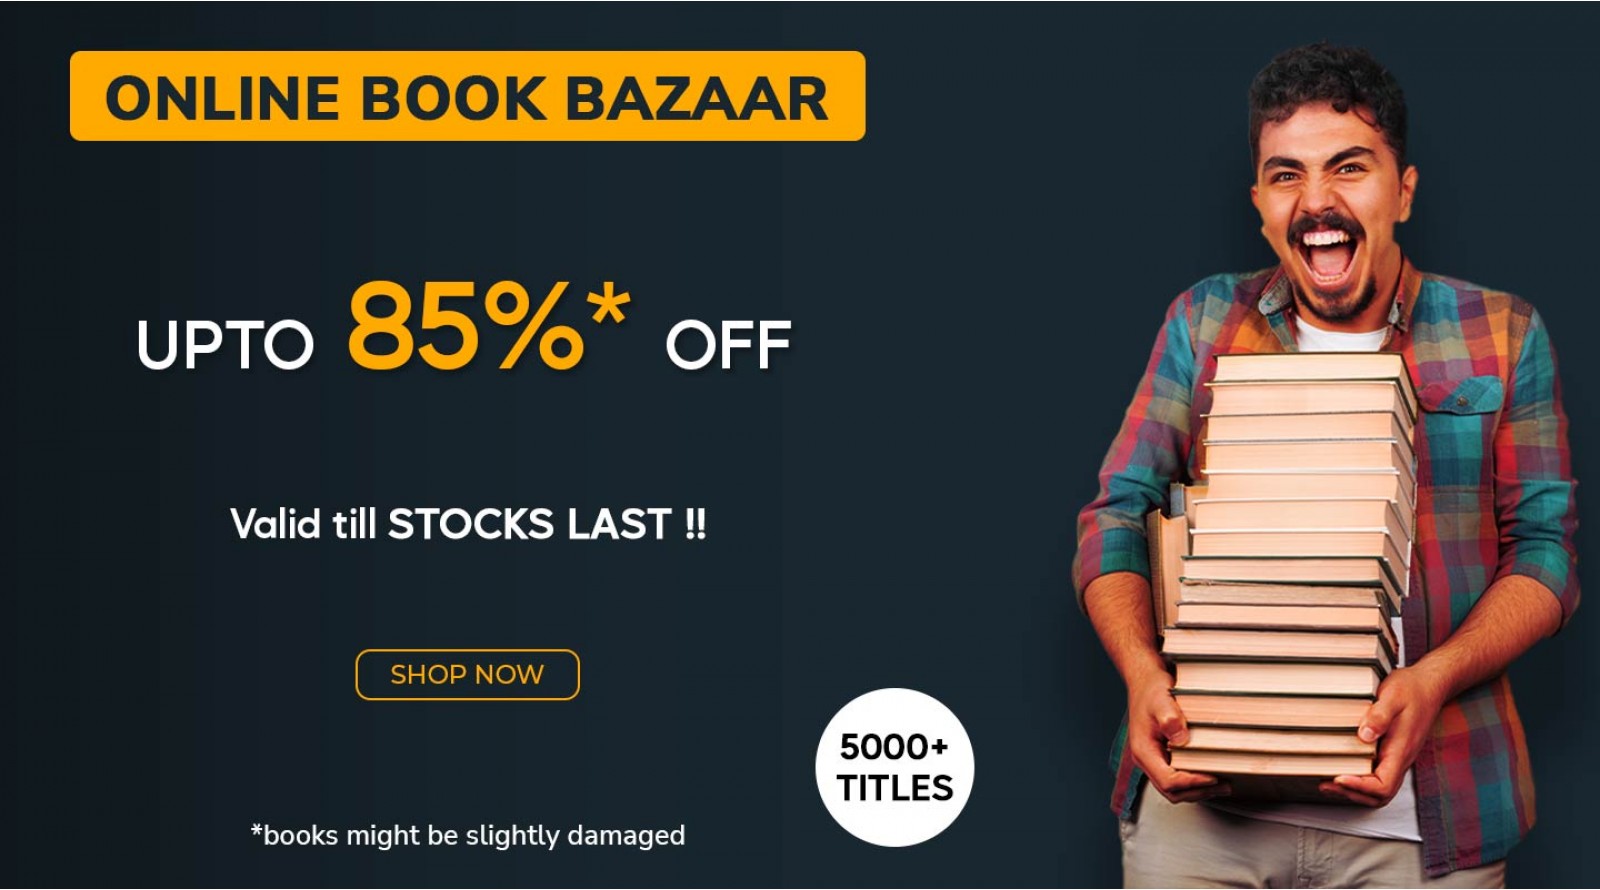 Online Book Bazar